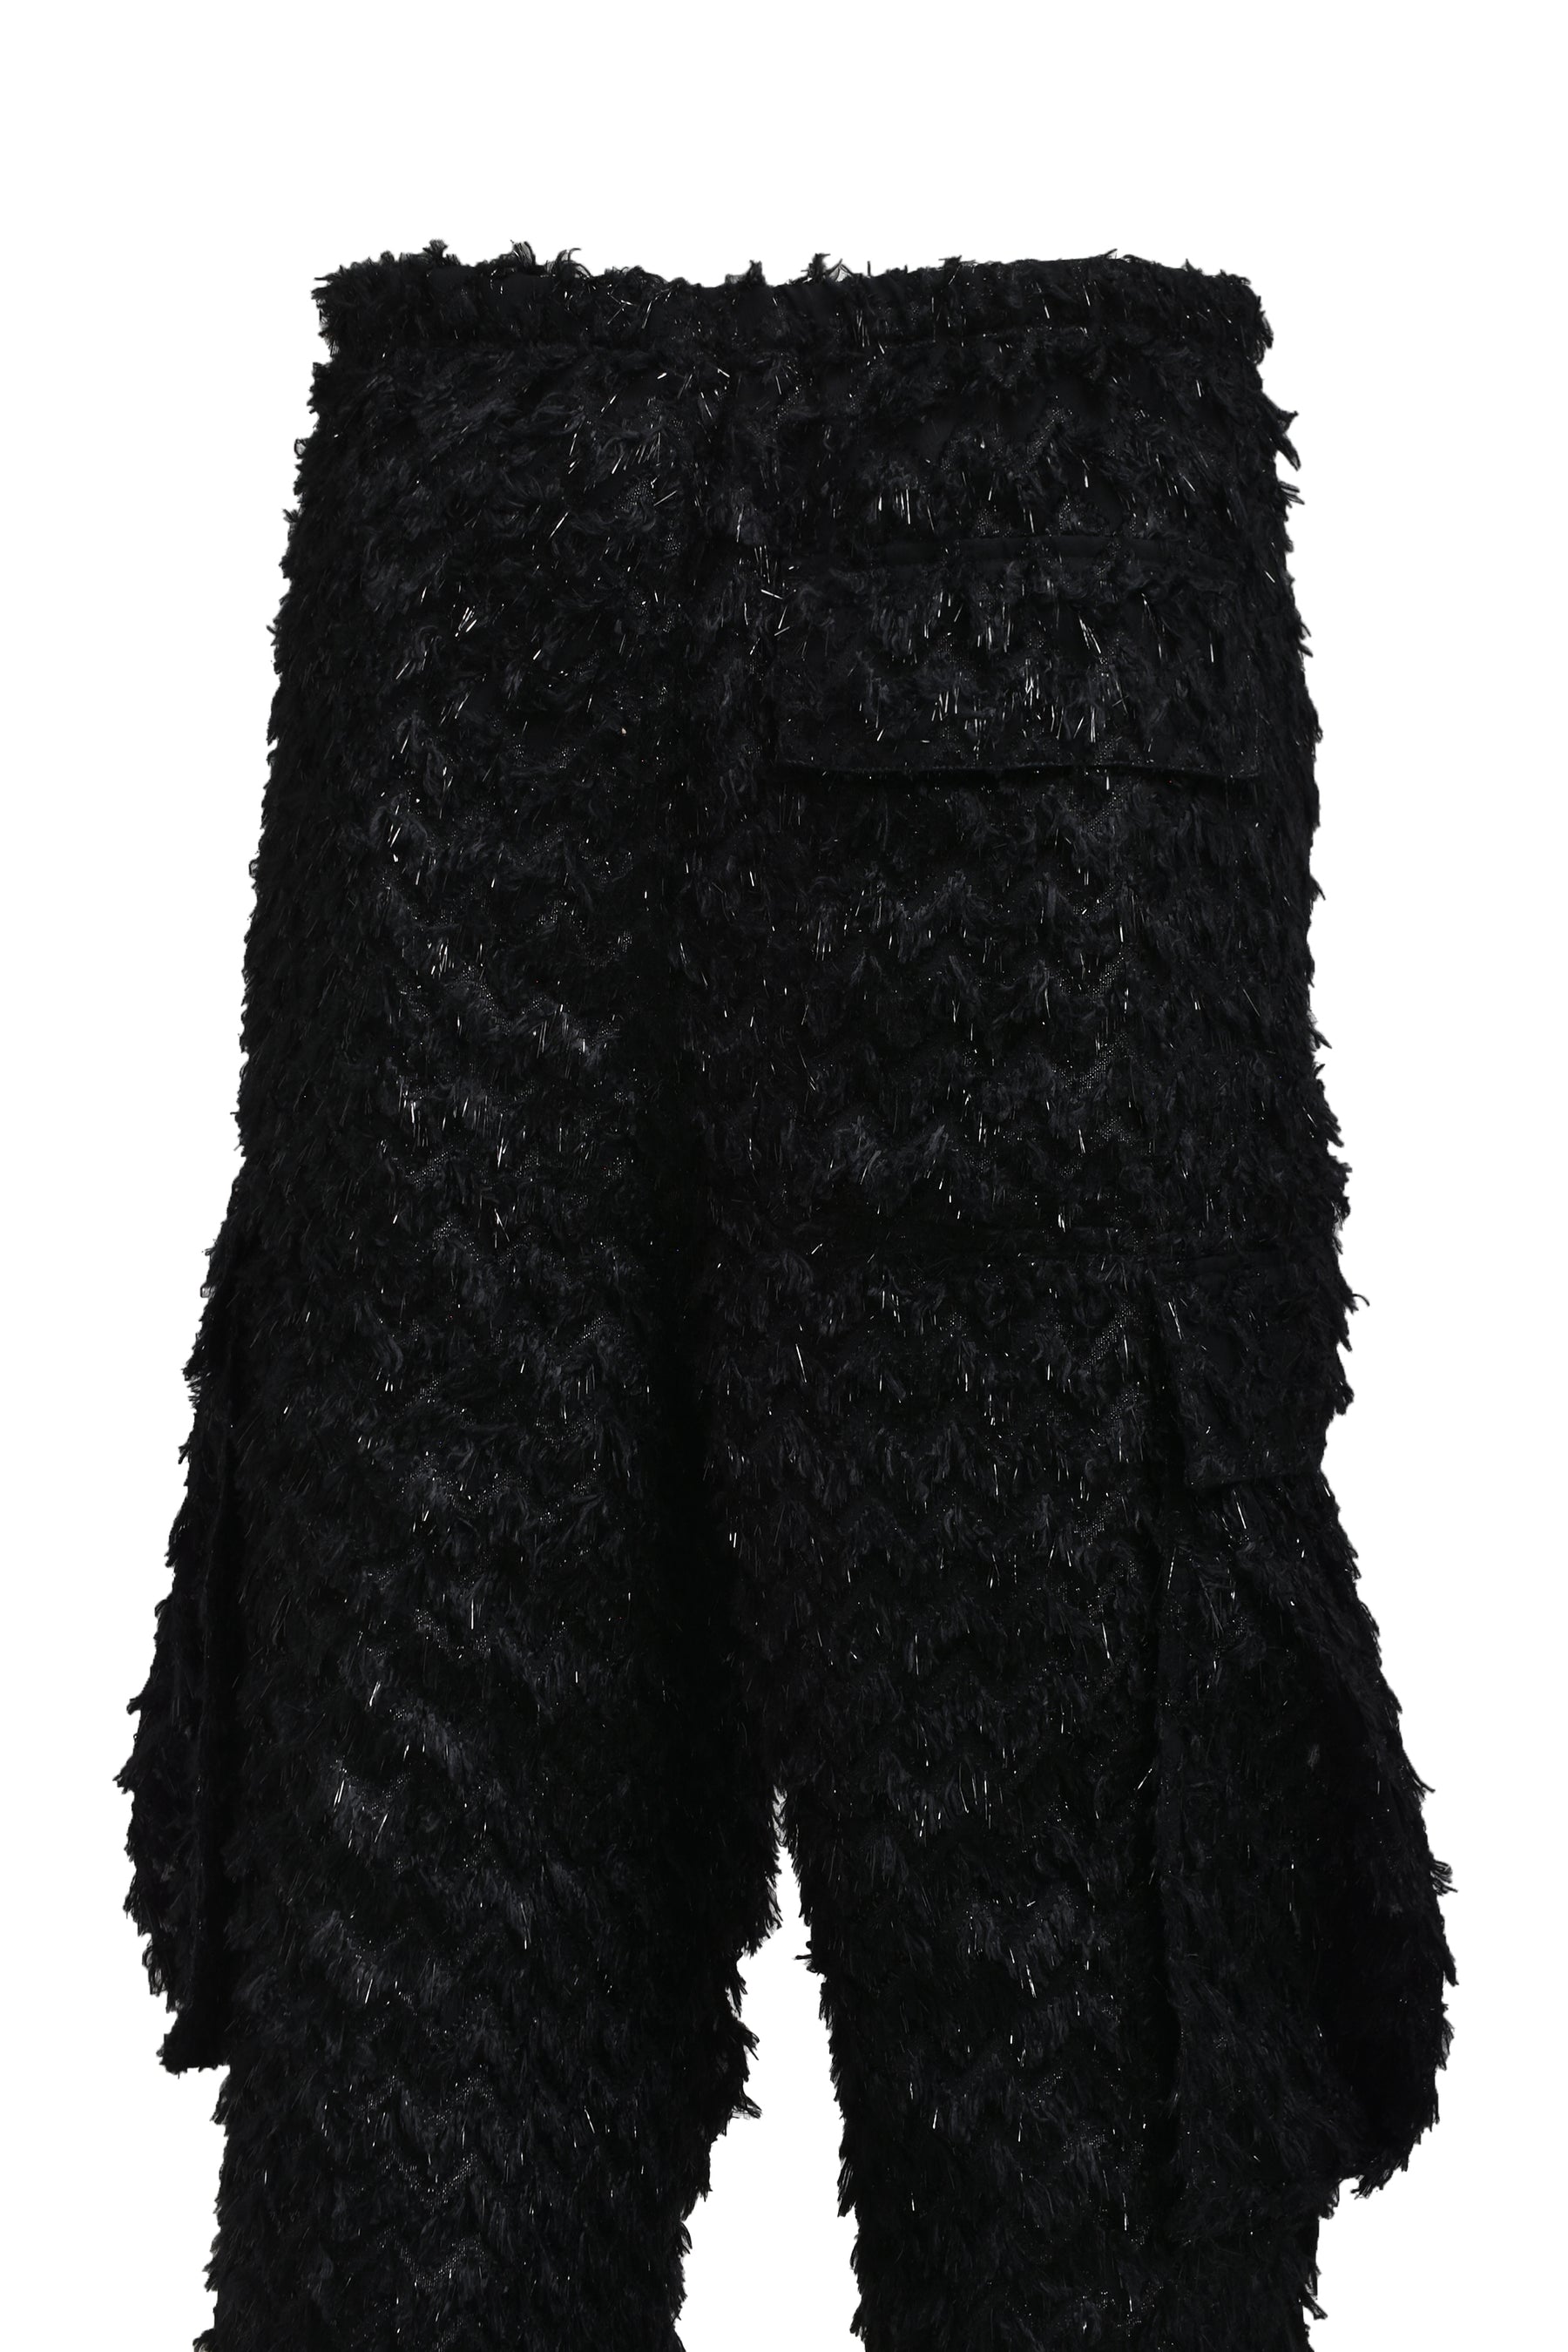 Mavi Women's Elsie Cargo Pants In Black Luxe Twill